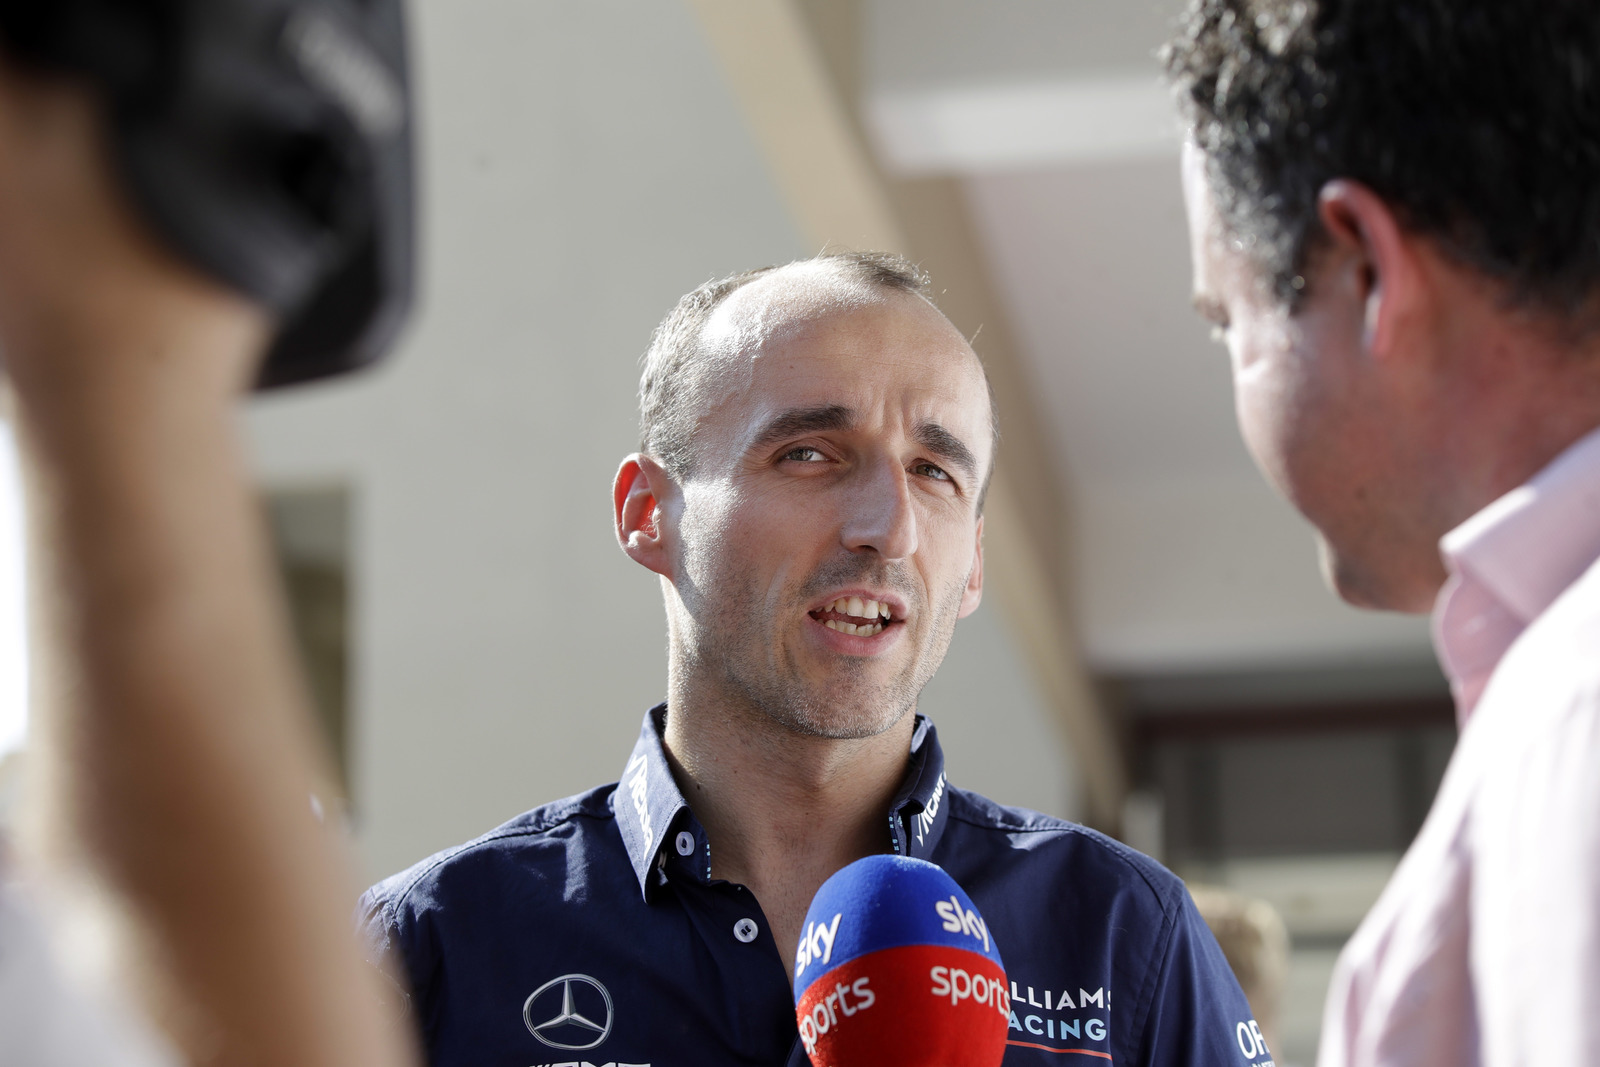 El piloto polaco Robert Kubica da declaraciones en el circuito Yas Marina en la previoa del Gran Premio de Abu Dabi en Emiratos Árabes Unidos.